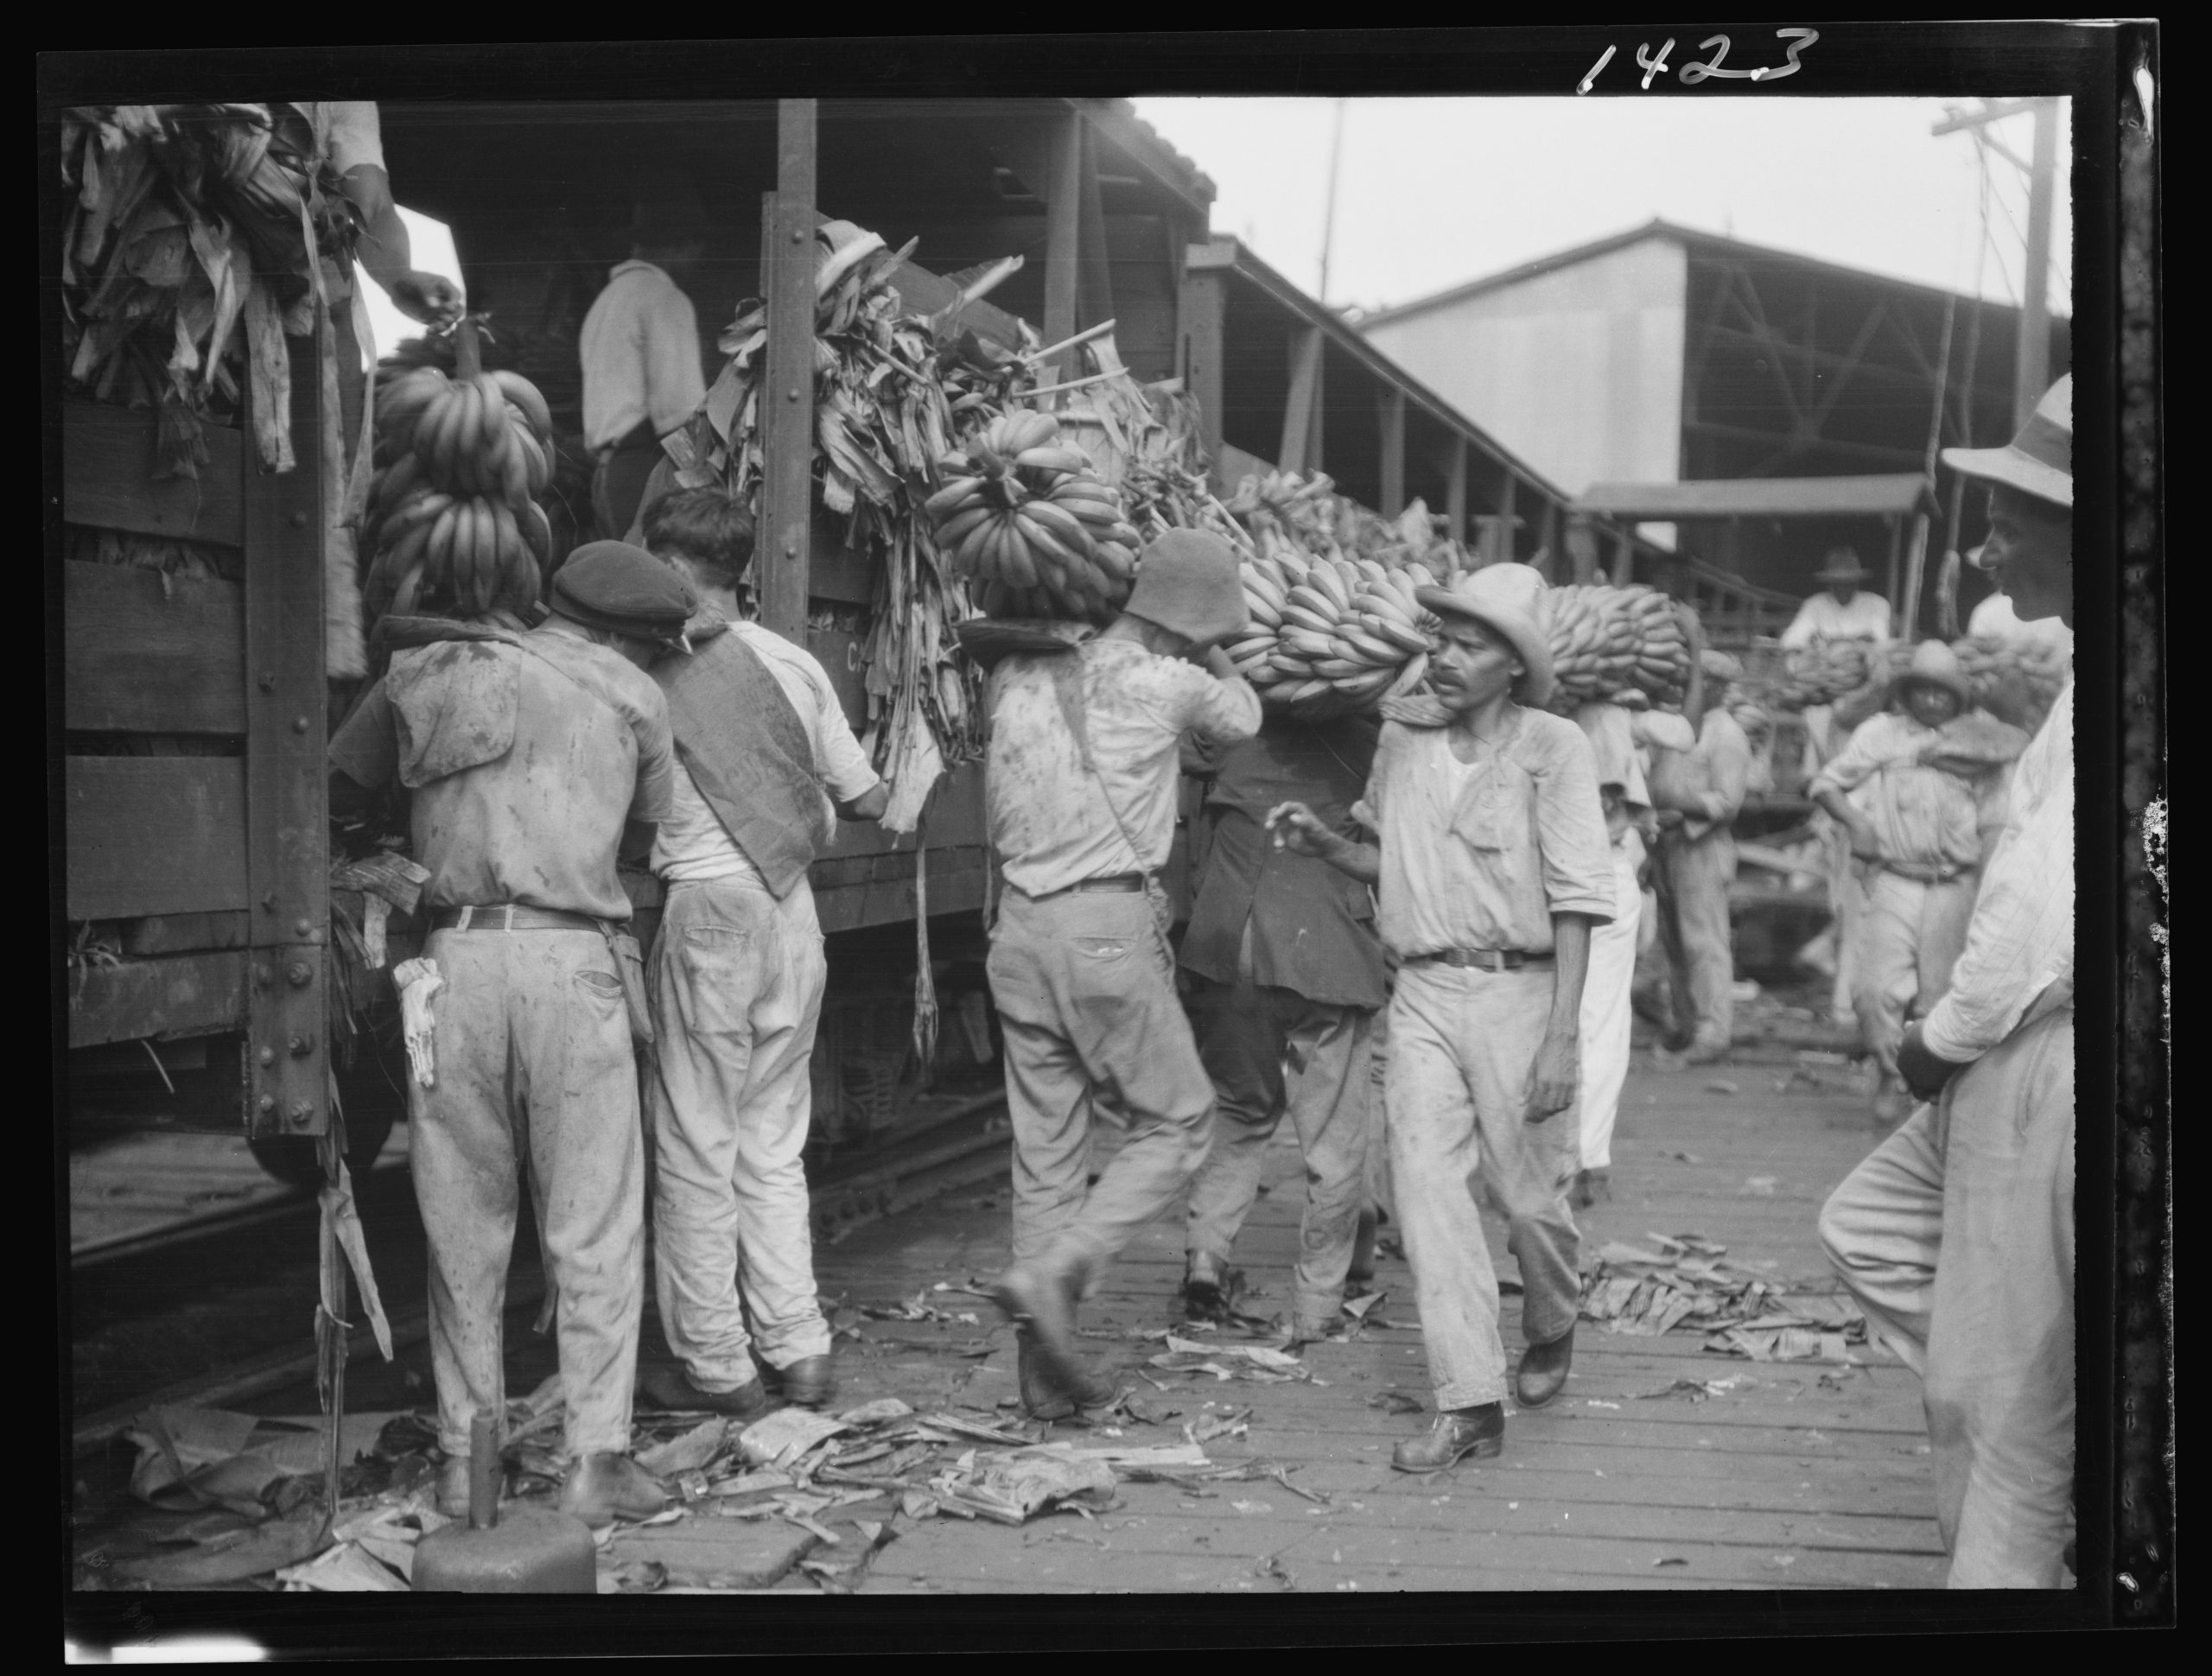 פועלים פורקים אשכולות בננות בנמל ניו אורלינס, שנות ה-1920 (ארכיון ספריית הקונגרס האמריקאי, ויקיפדיה)